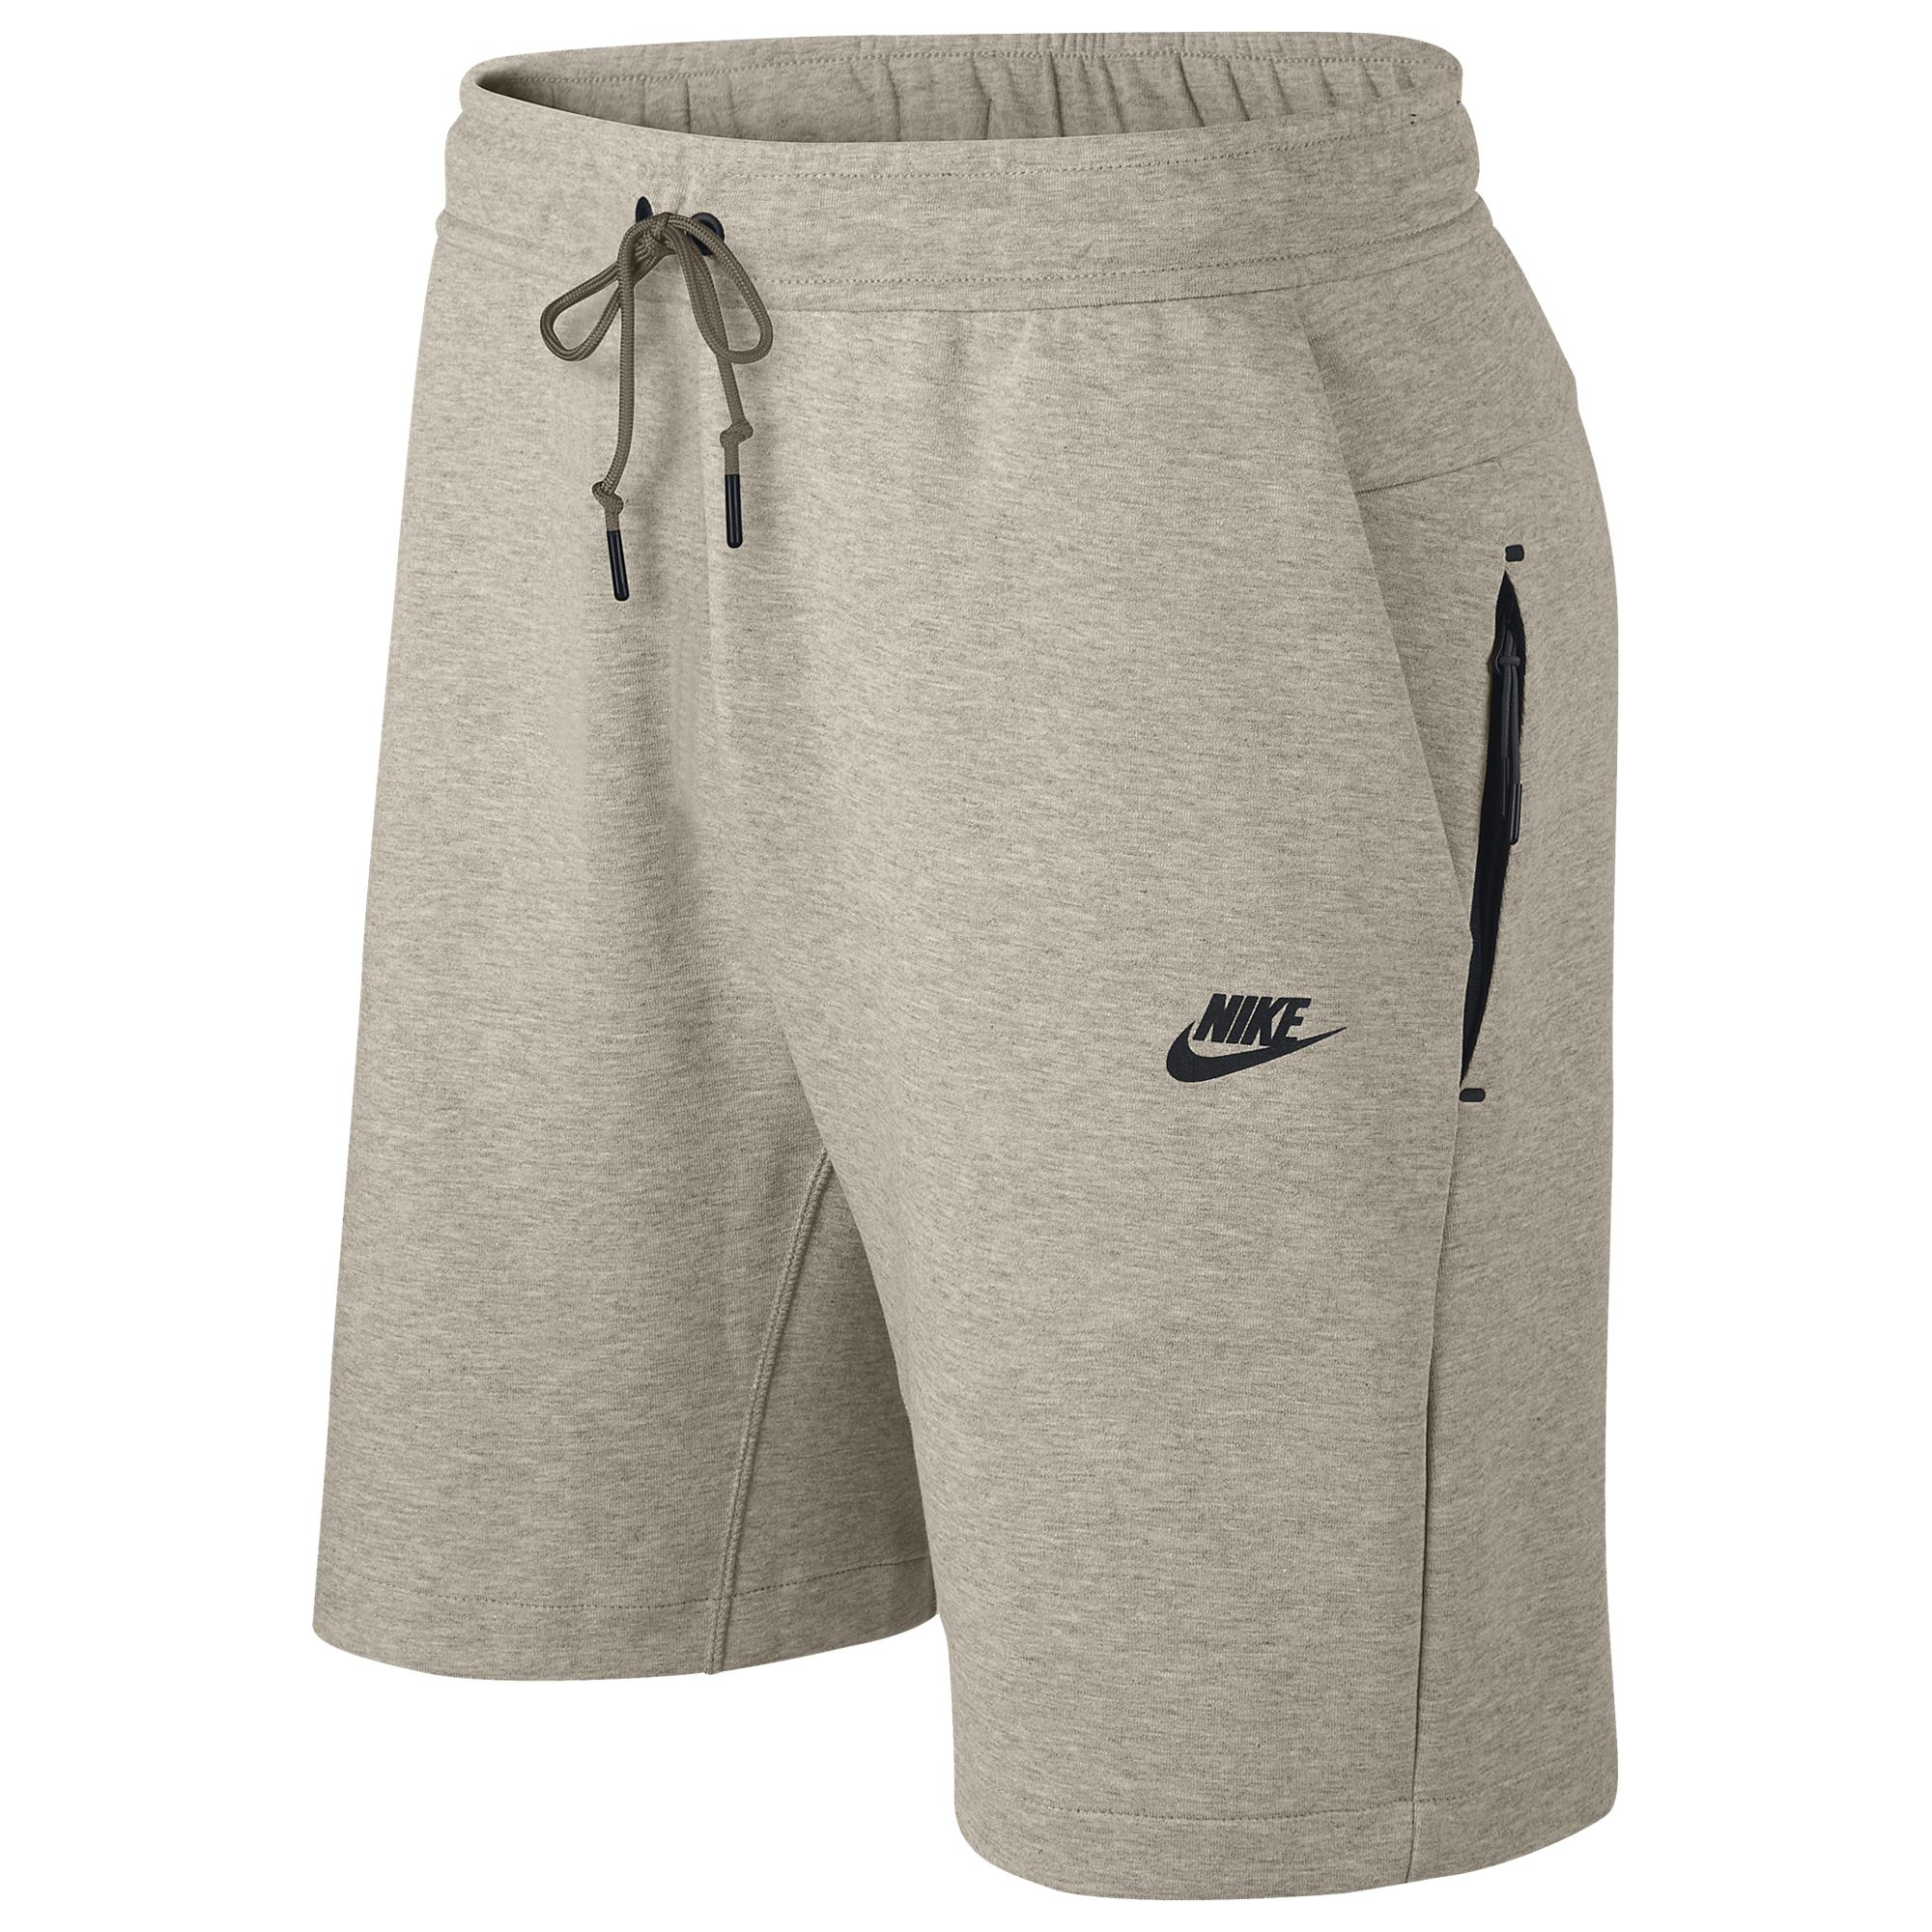 Nike Tech Fleece Shorts in Oatmeal Heather/Black (Gray) for Men - Lyst